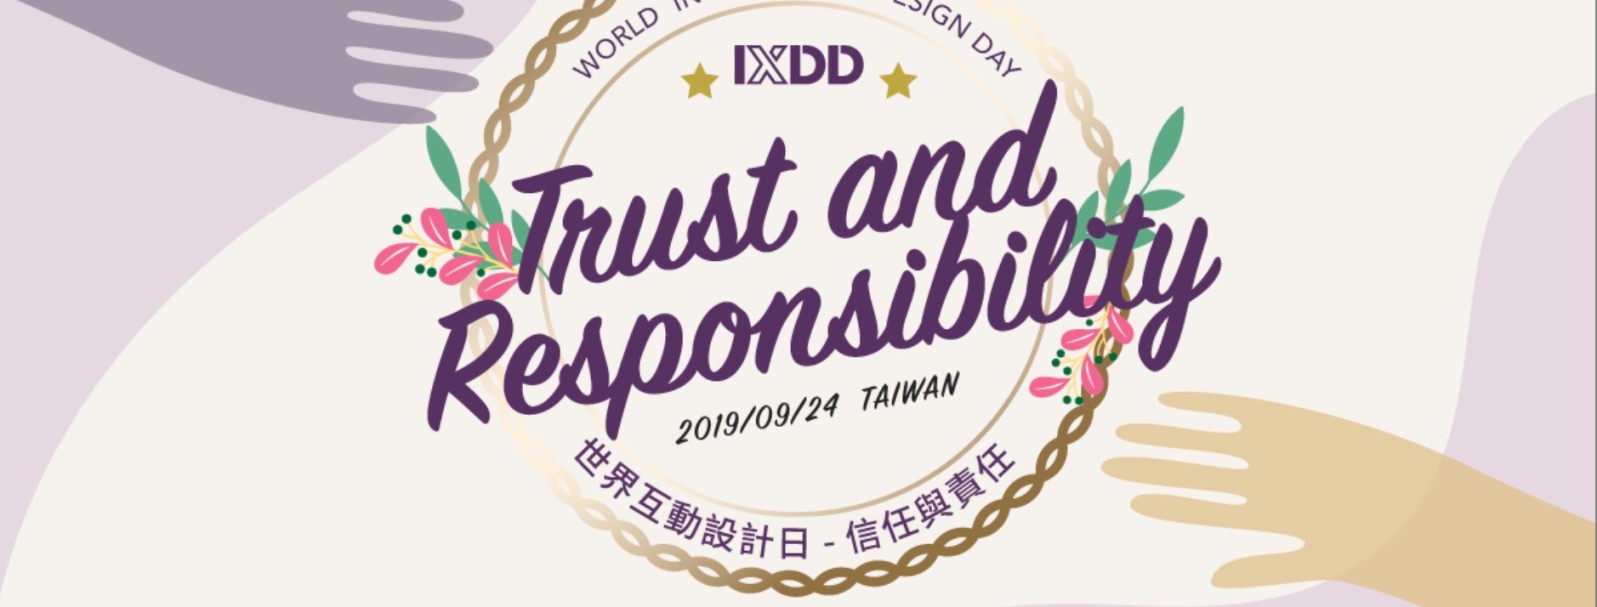 2019 世界互動設計日 - IXDA 與 SDN Taiwan 跨界小聚